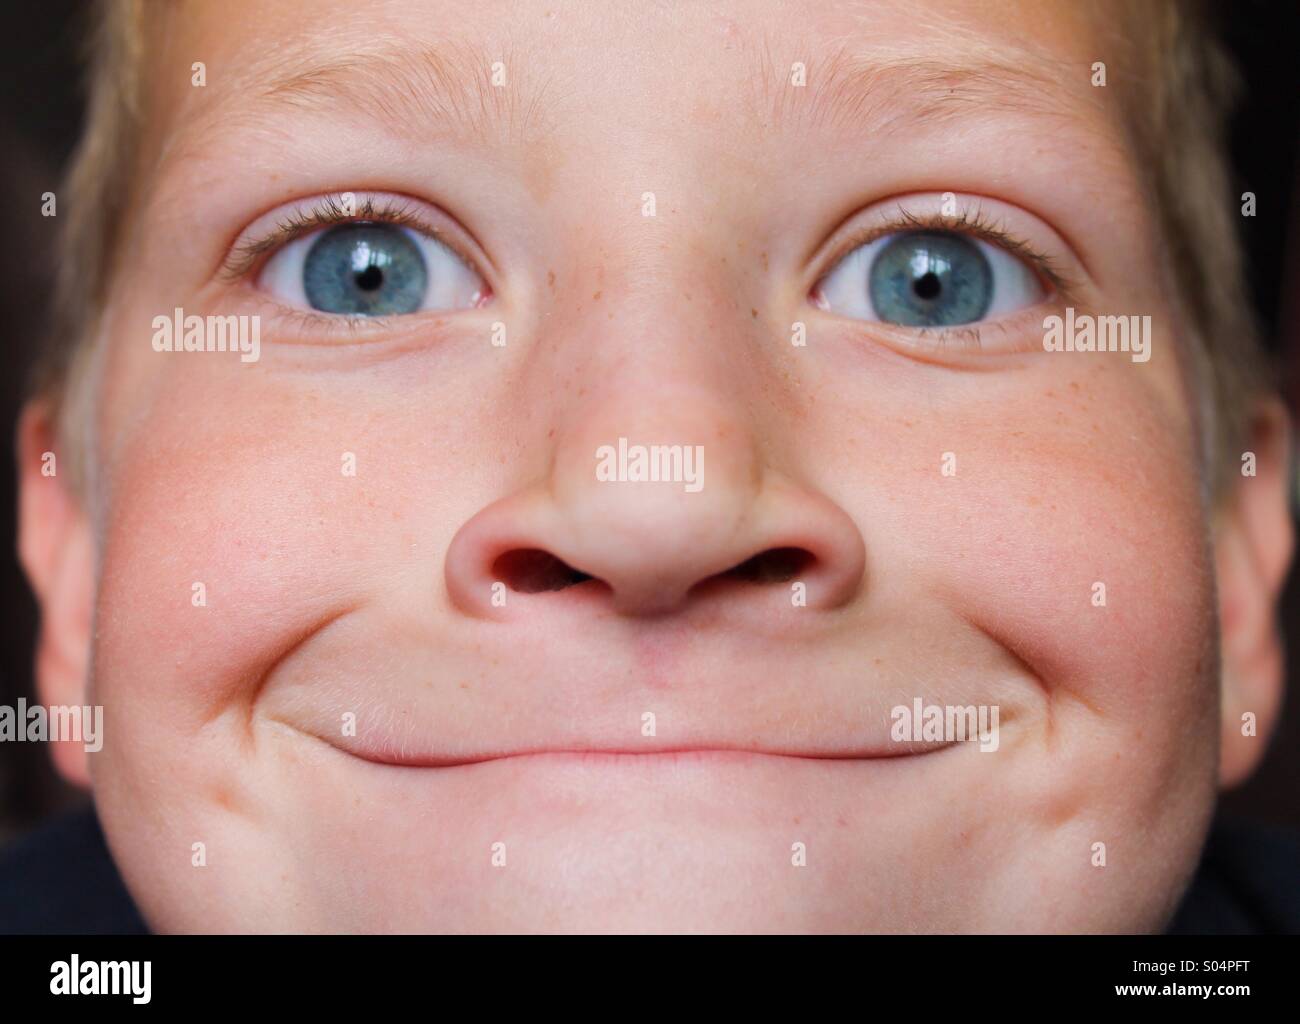 Smug face Stock Photo